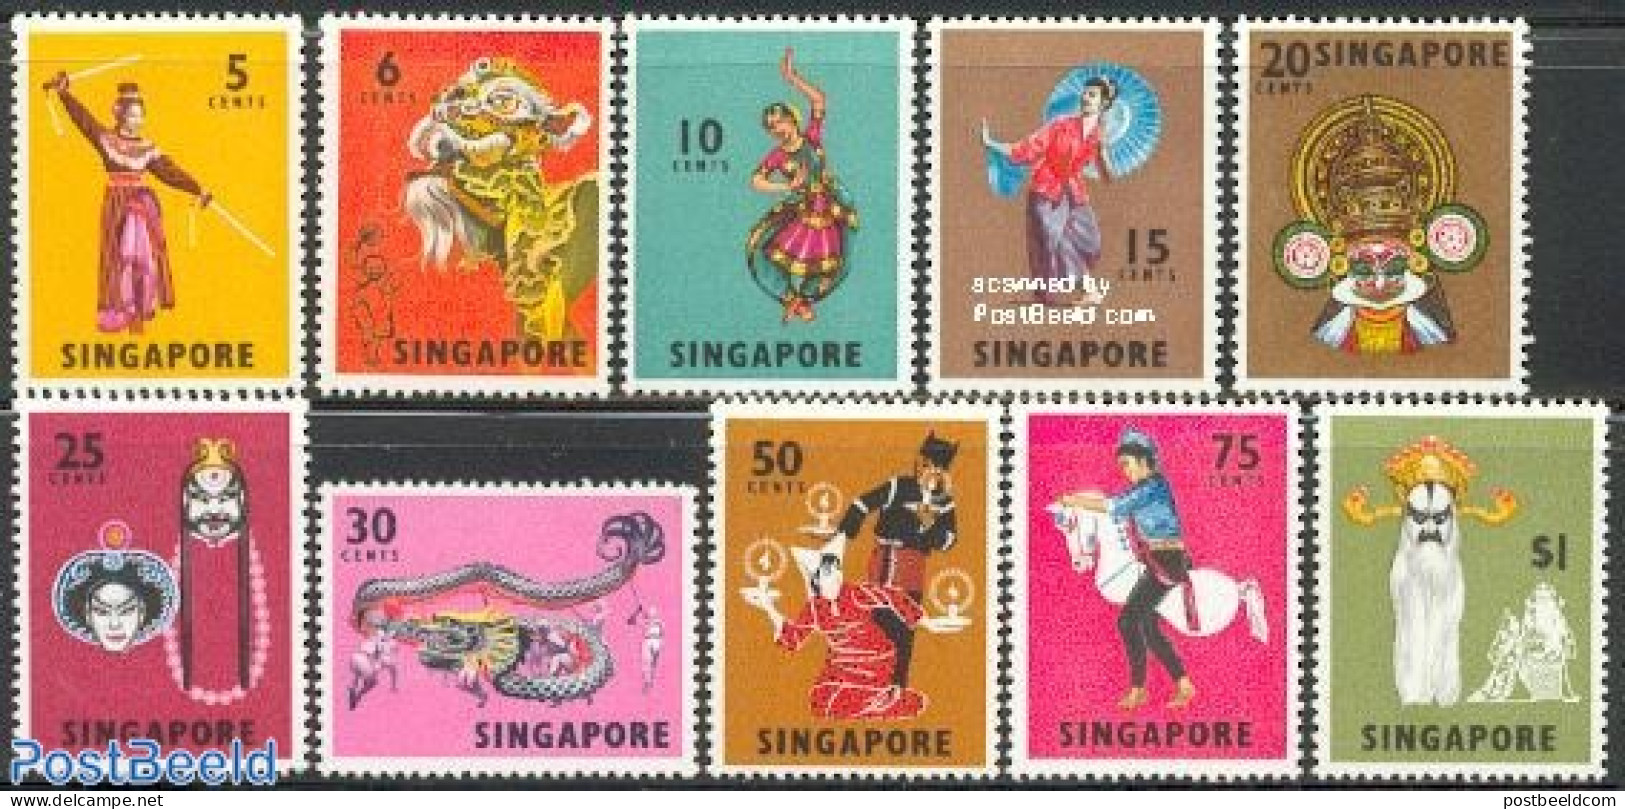 Singapore 1968 Definitives, Dances 10v, Mint NH, Performance Art - Various - Dance & Ballet - Folklore - Danse